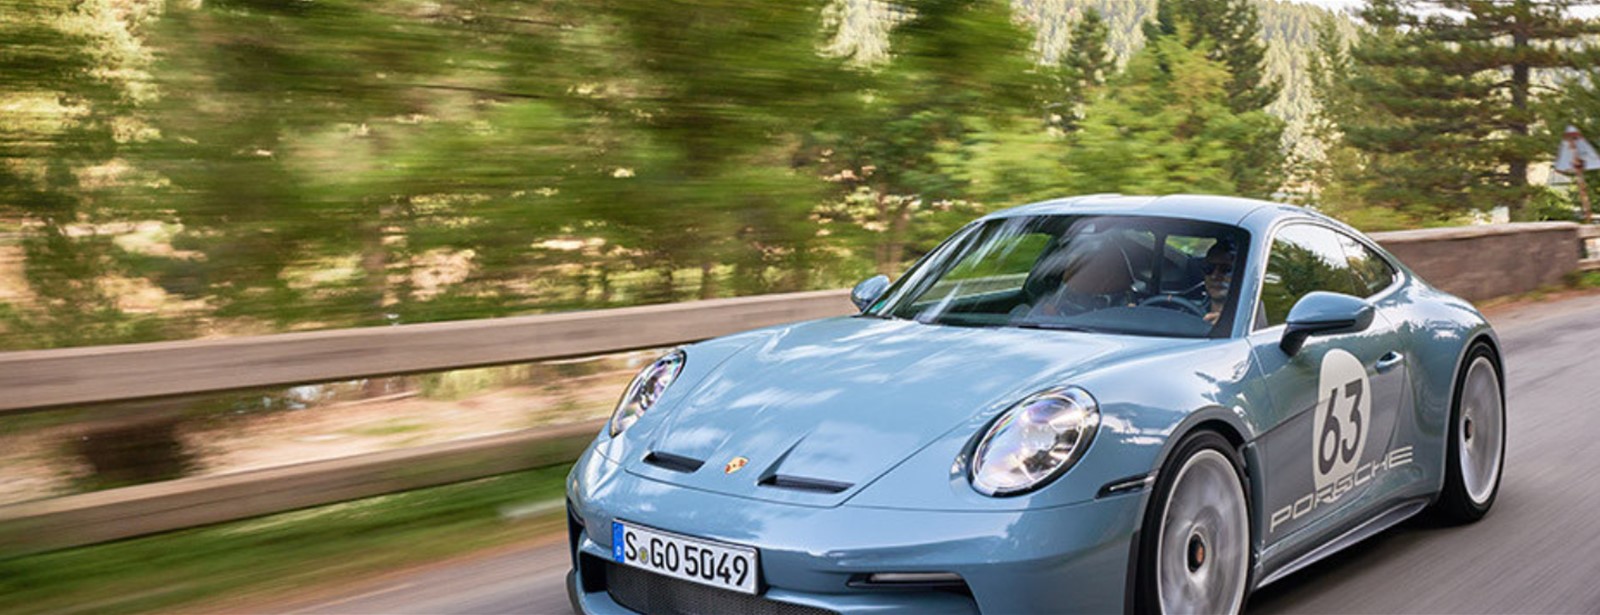 AutoWeek test Porsche 911 S/T: Hoor en voel, wat een feest is dit!.